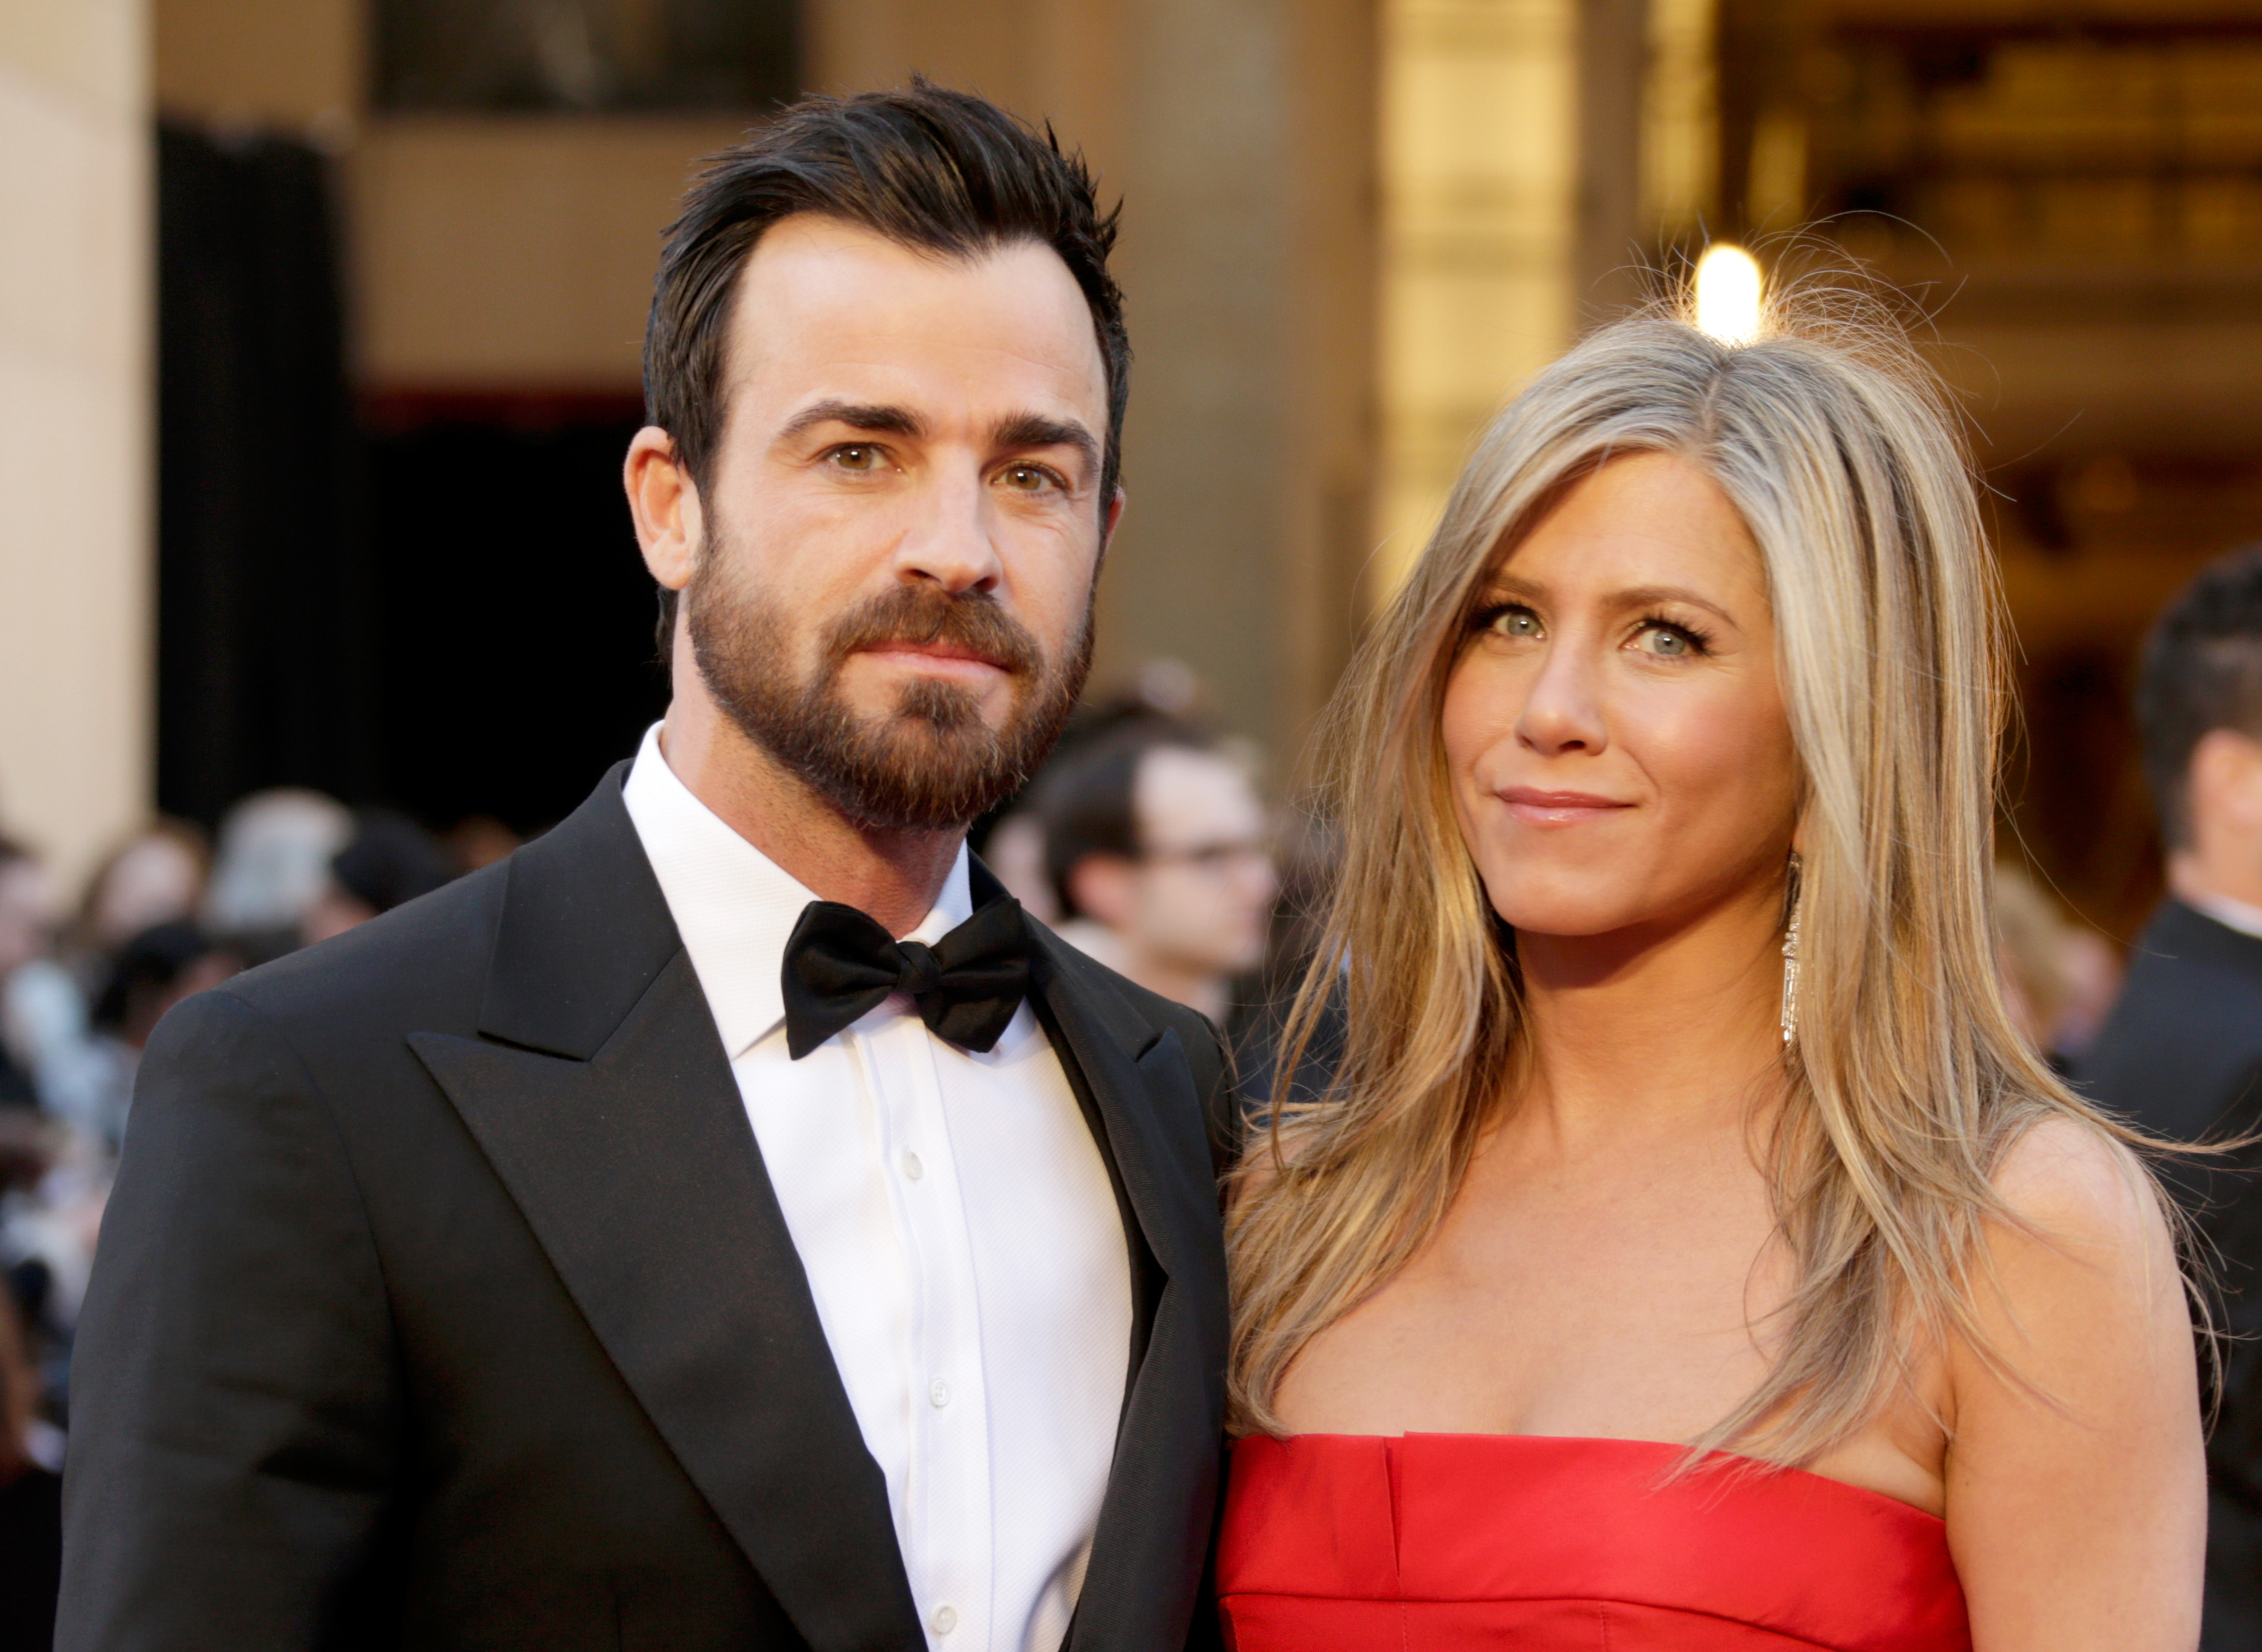 Justin Theroux et Jennifer Aniston aux Oscars le 24 février 2013 à Hollywood, Californie | Source : Getty Images